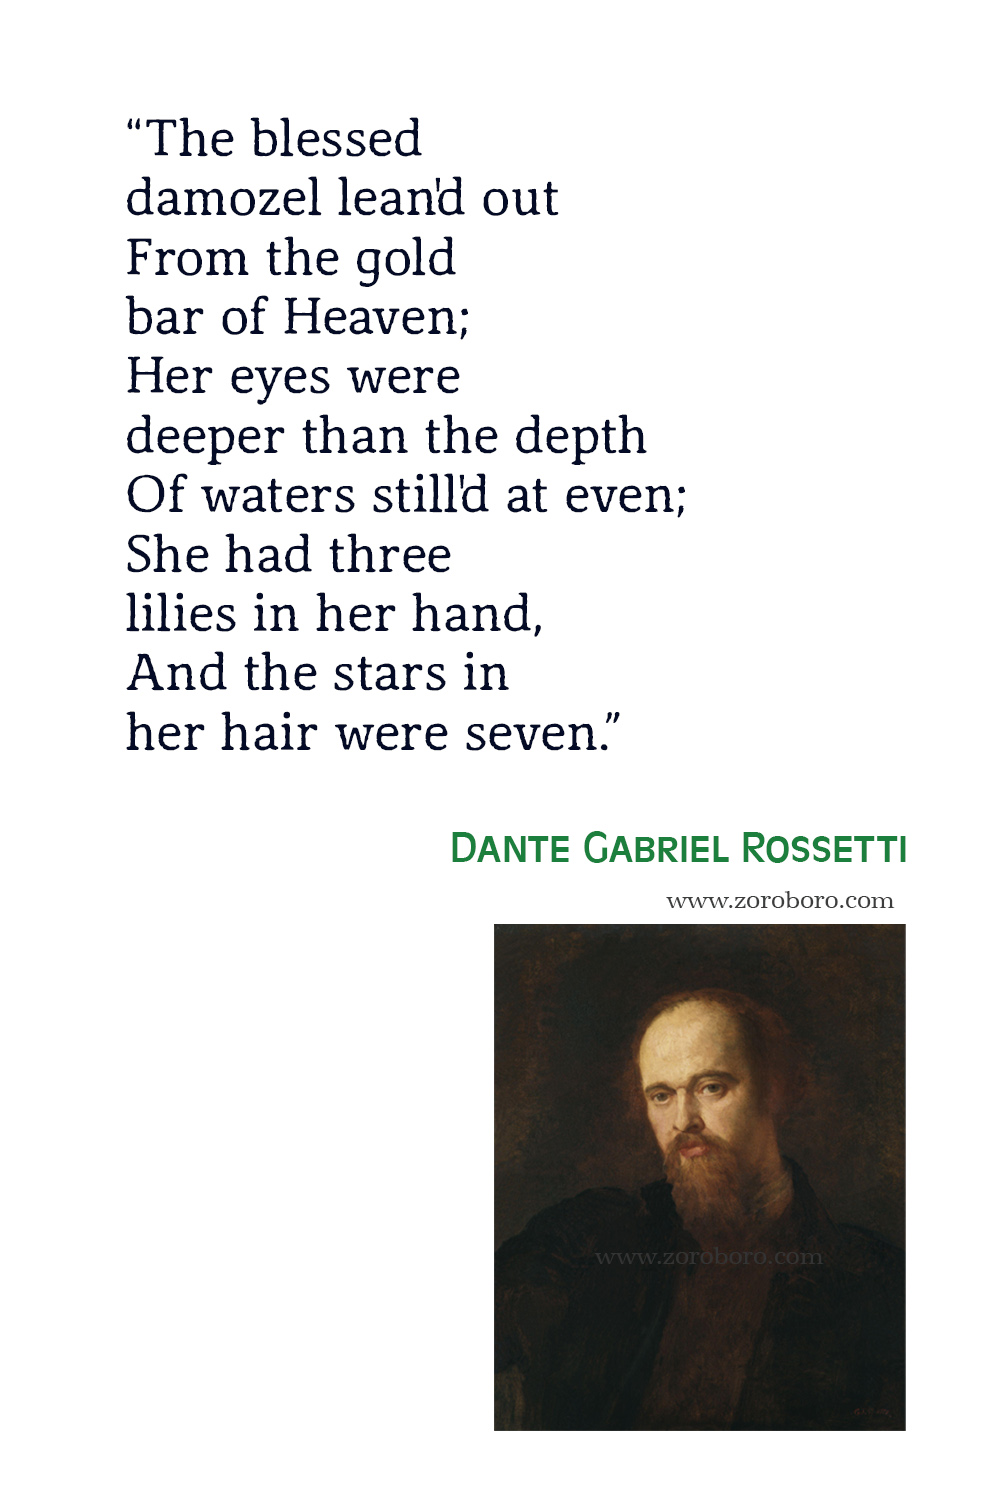 Dante Gabriel Rossetti Quotes, Dante Gabriel Rossetti Poems, Dante Gabriel Rossetti Poetry, Dante Gabriel Rossetti Famous Poems.